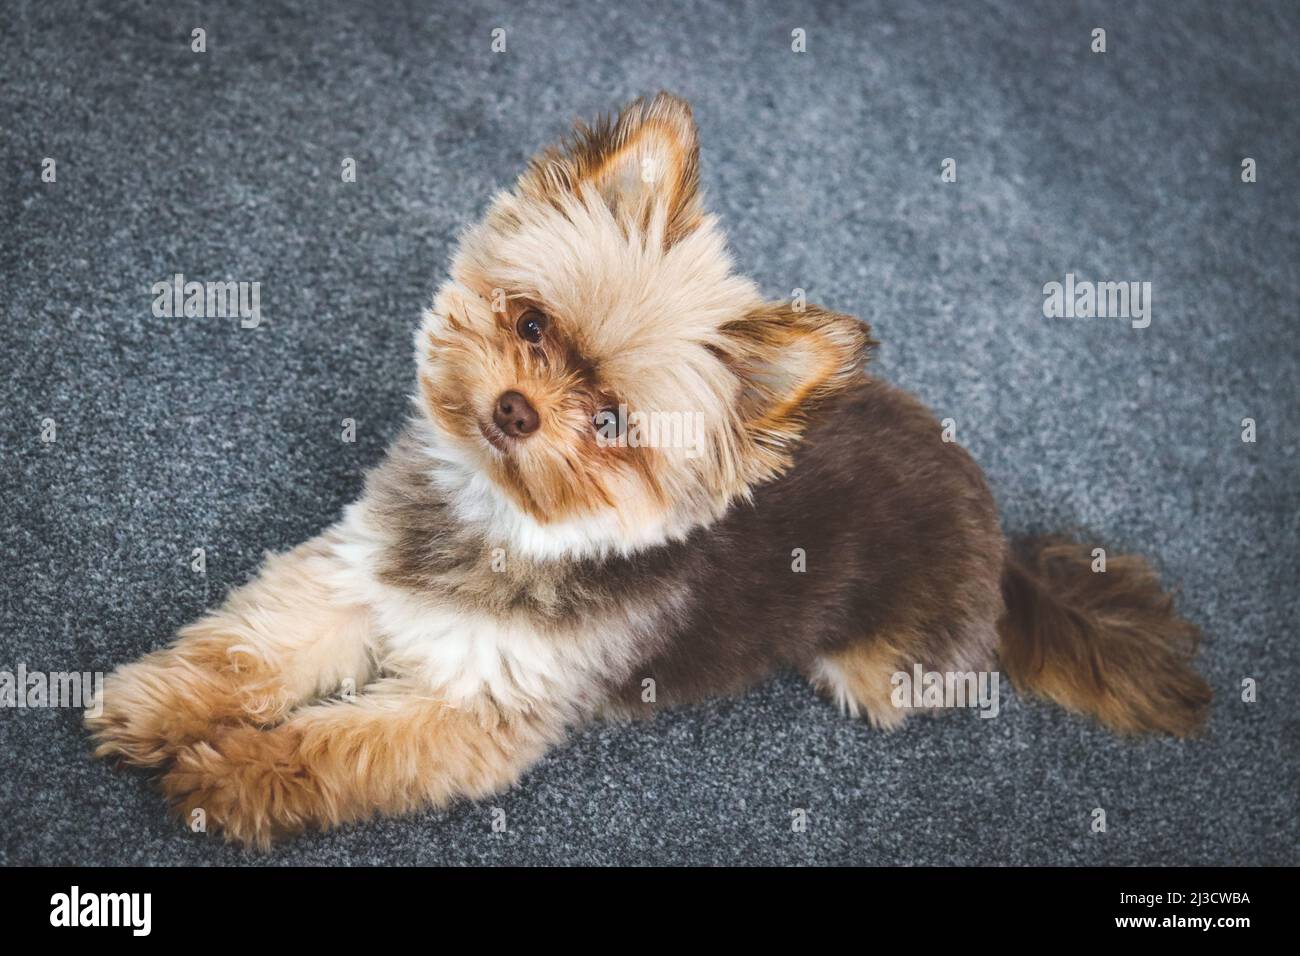 Netter kleiner flauschiger Schokoladenhund, der in die Kamera schaut Stockfoto